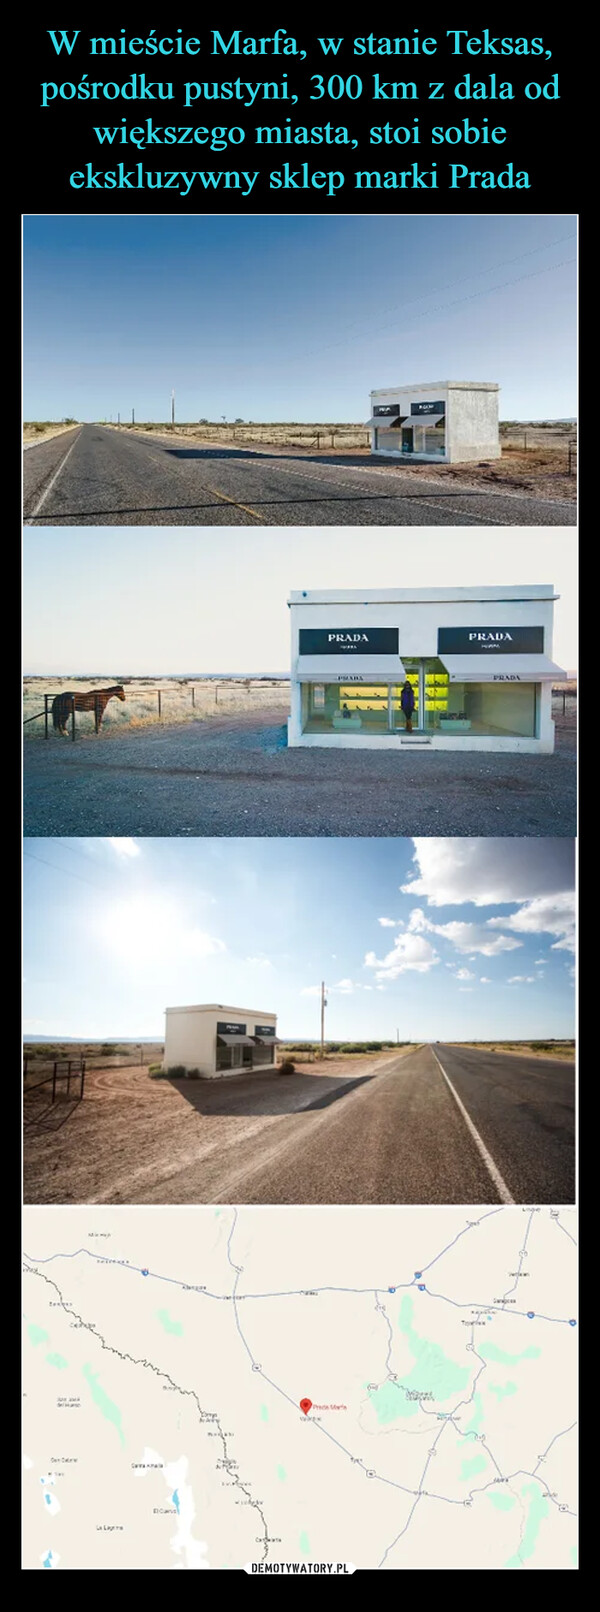 W mieście Marfa, w stanie Teksas, pośrodku pustyni, 300 km z dala od większego miasta, stoi sobie ekskluzywny sklep marki Prada